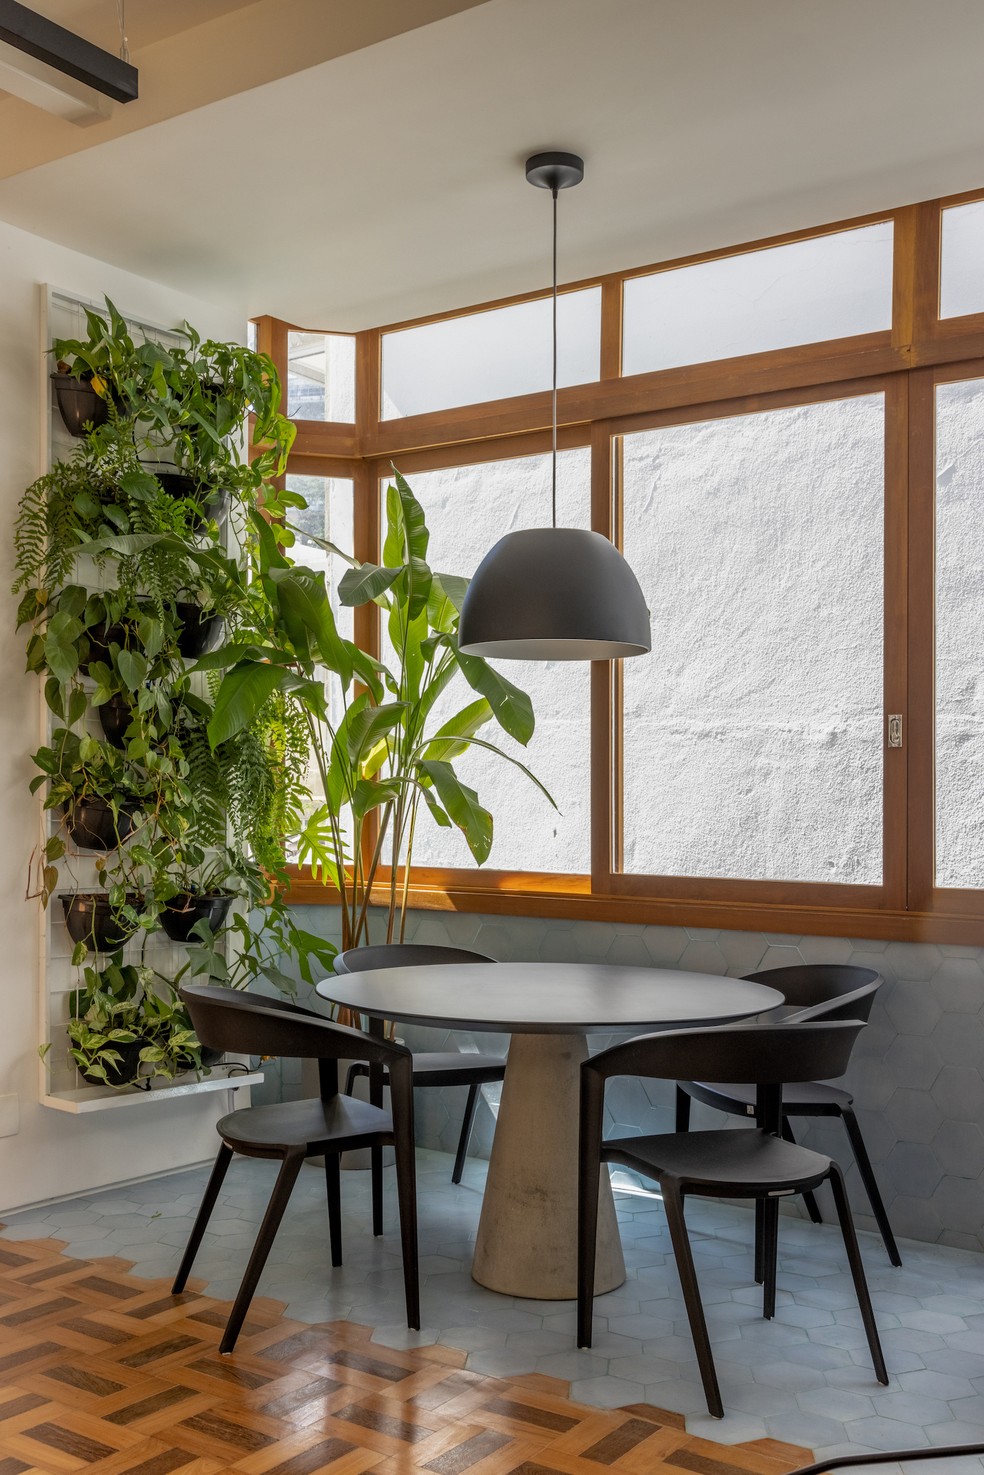 SALA DE JANTAR | A parede de plantas garante que os moradores tenham contato com a natureza mesmo na área social — Foto: André Nazareth / Divulgação